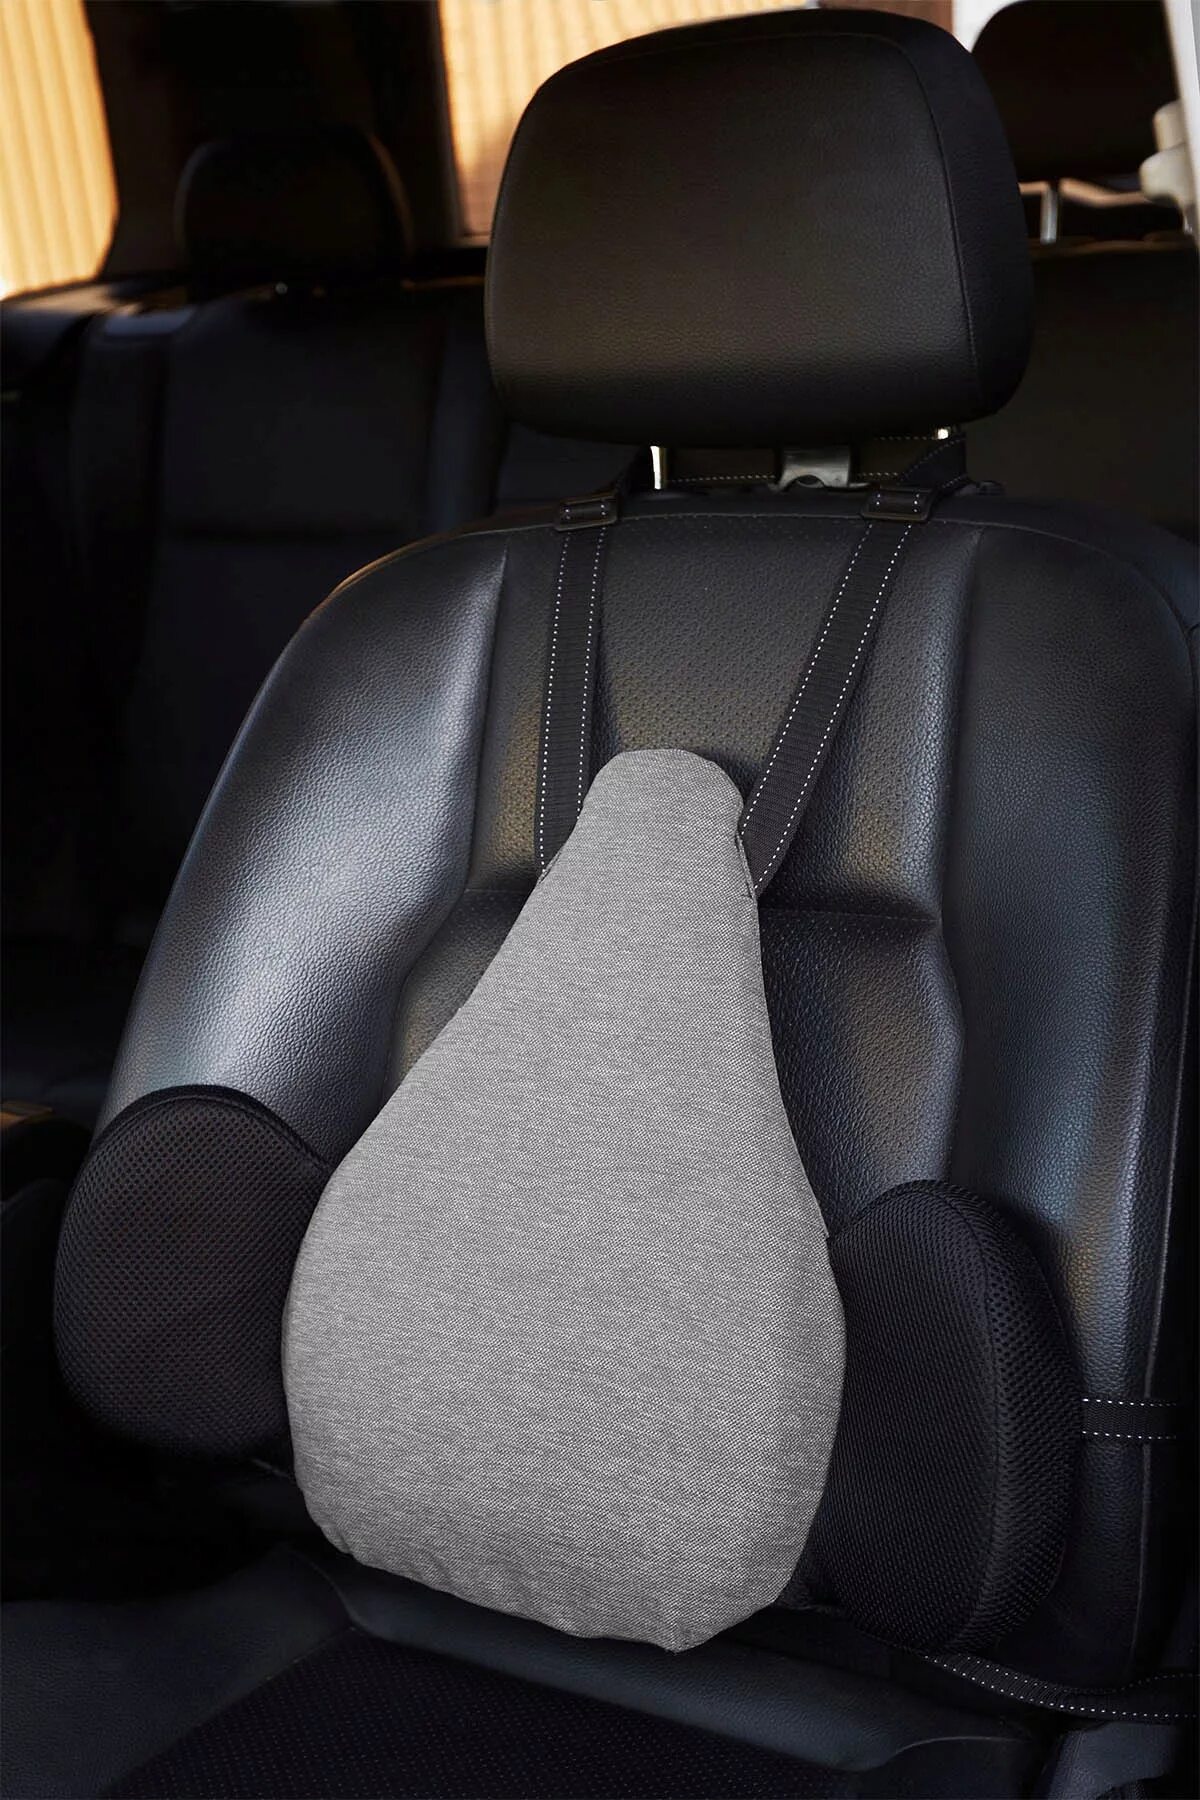 Поясничная подушка для автомобиля. Подушка для водителя на сиденье. Ортопедическая подушка для поясницы в автомобиль. Ортопедическое сиденье для водителя.